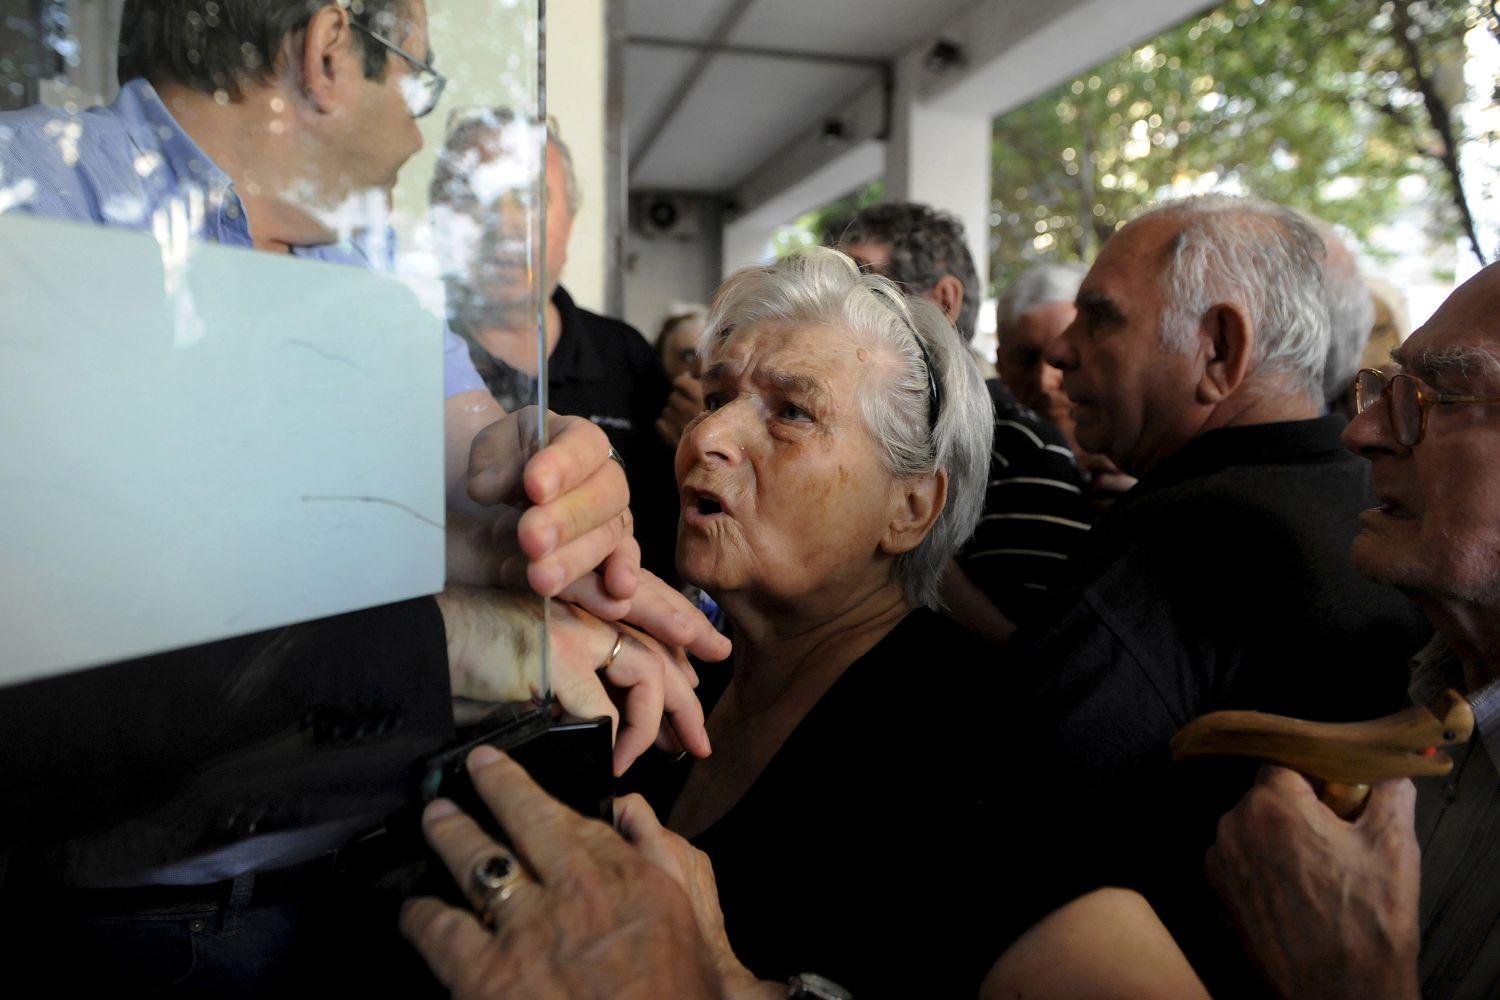 Sokan aggódnak a nyugdíjuk miatt - Thessalonikiben is mindennapossá váltak a tumultuózus jelenetek a bankok előtt